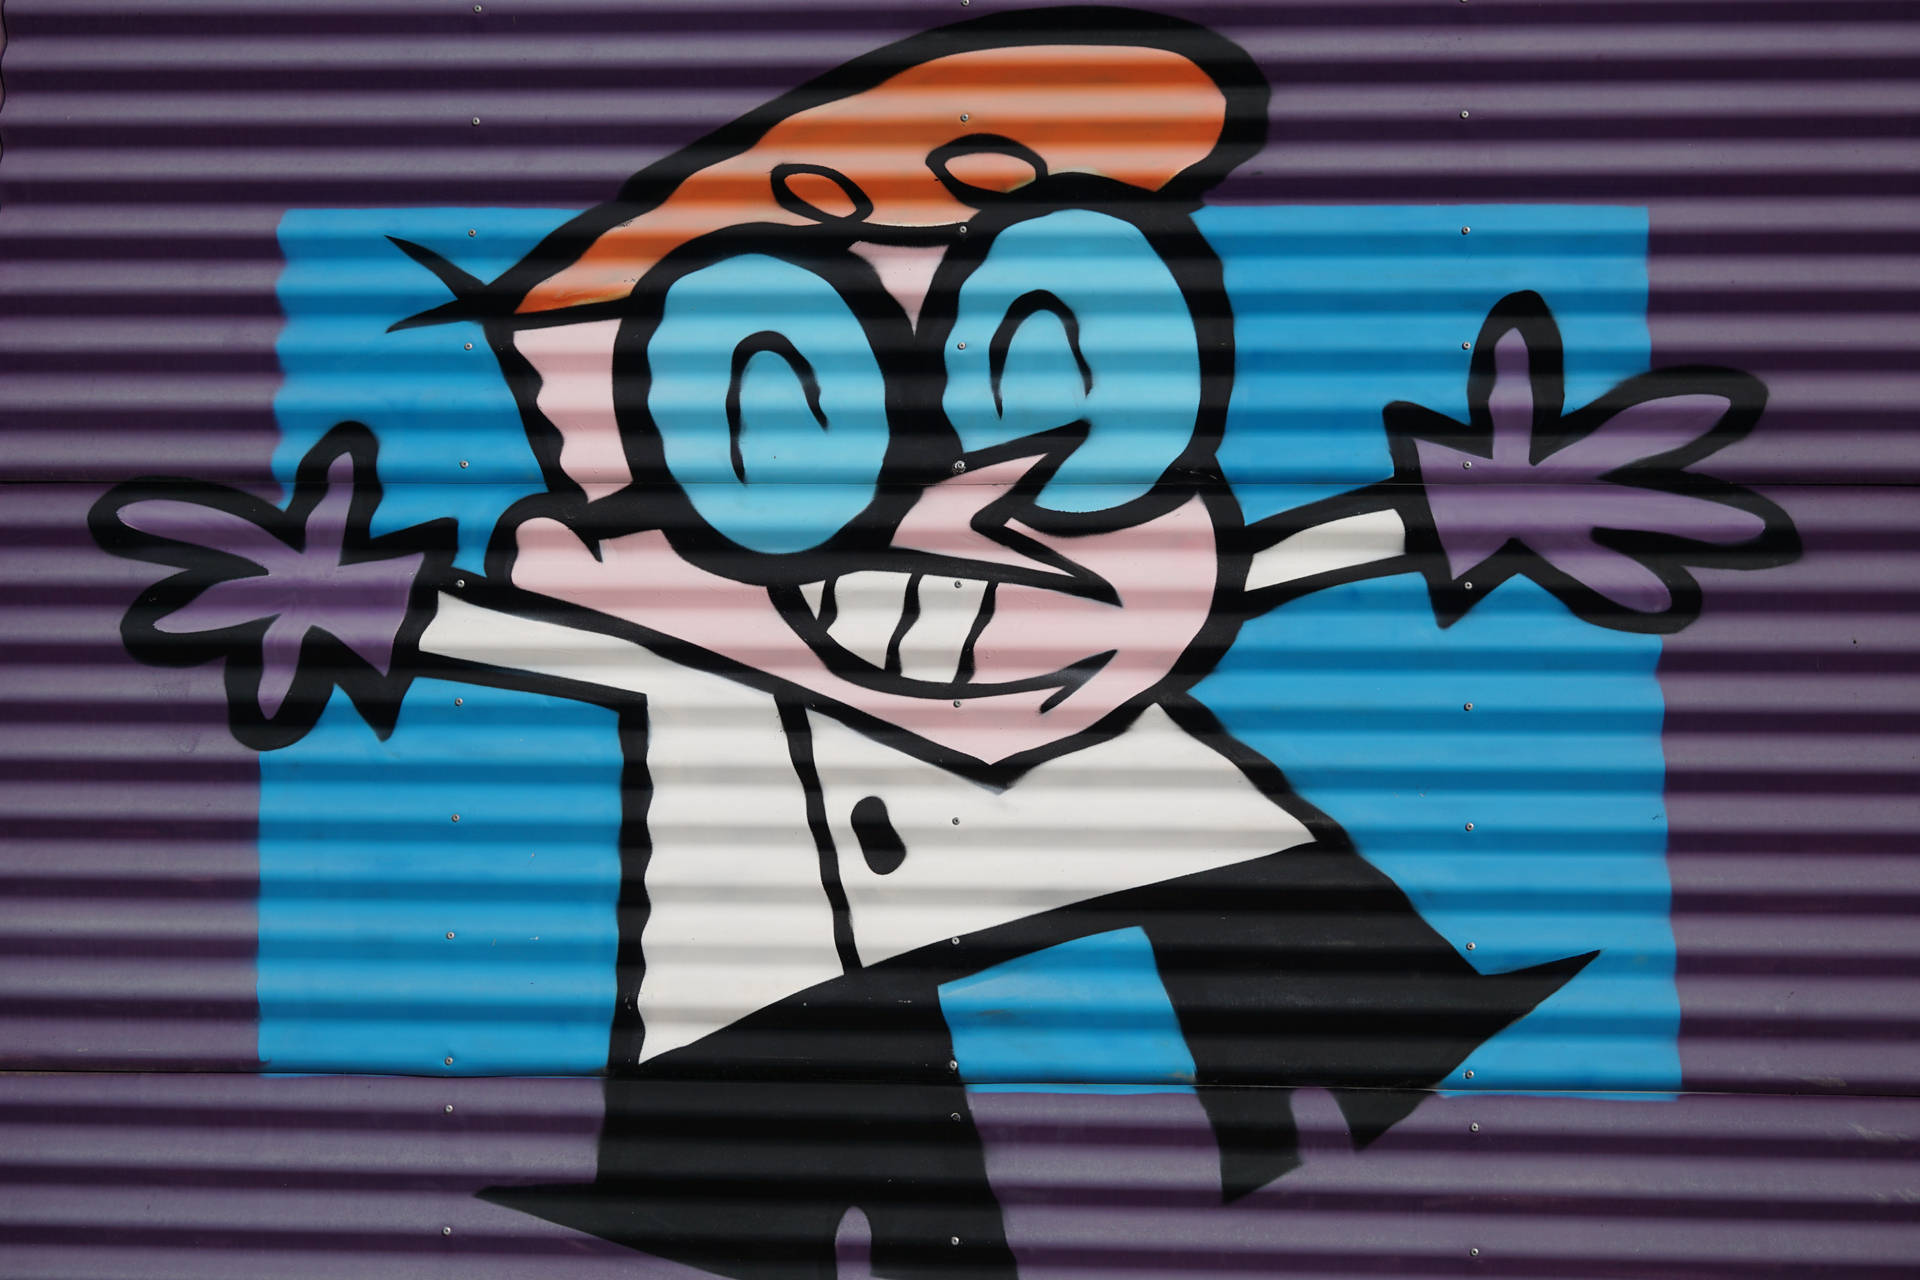 Hd Art Of Dexter Cartoon Network Wallpaper